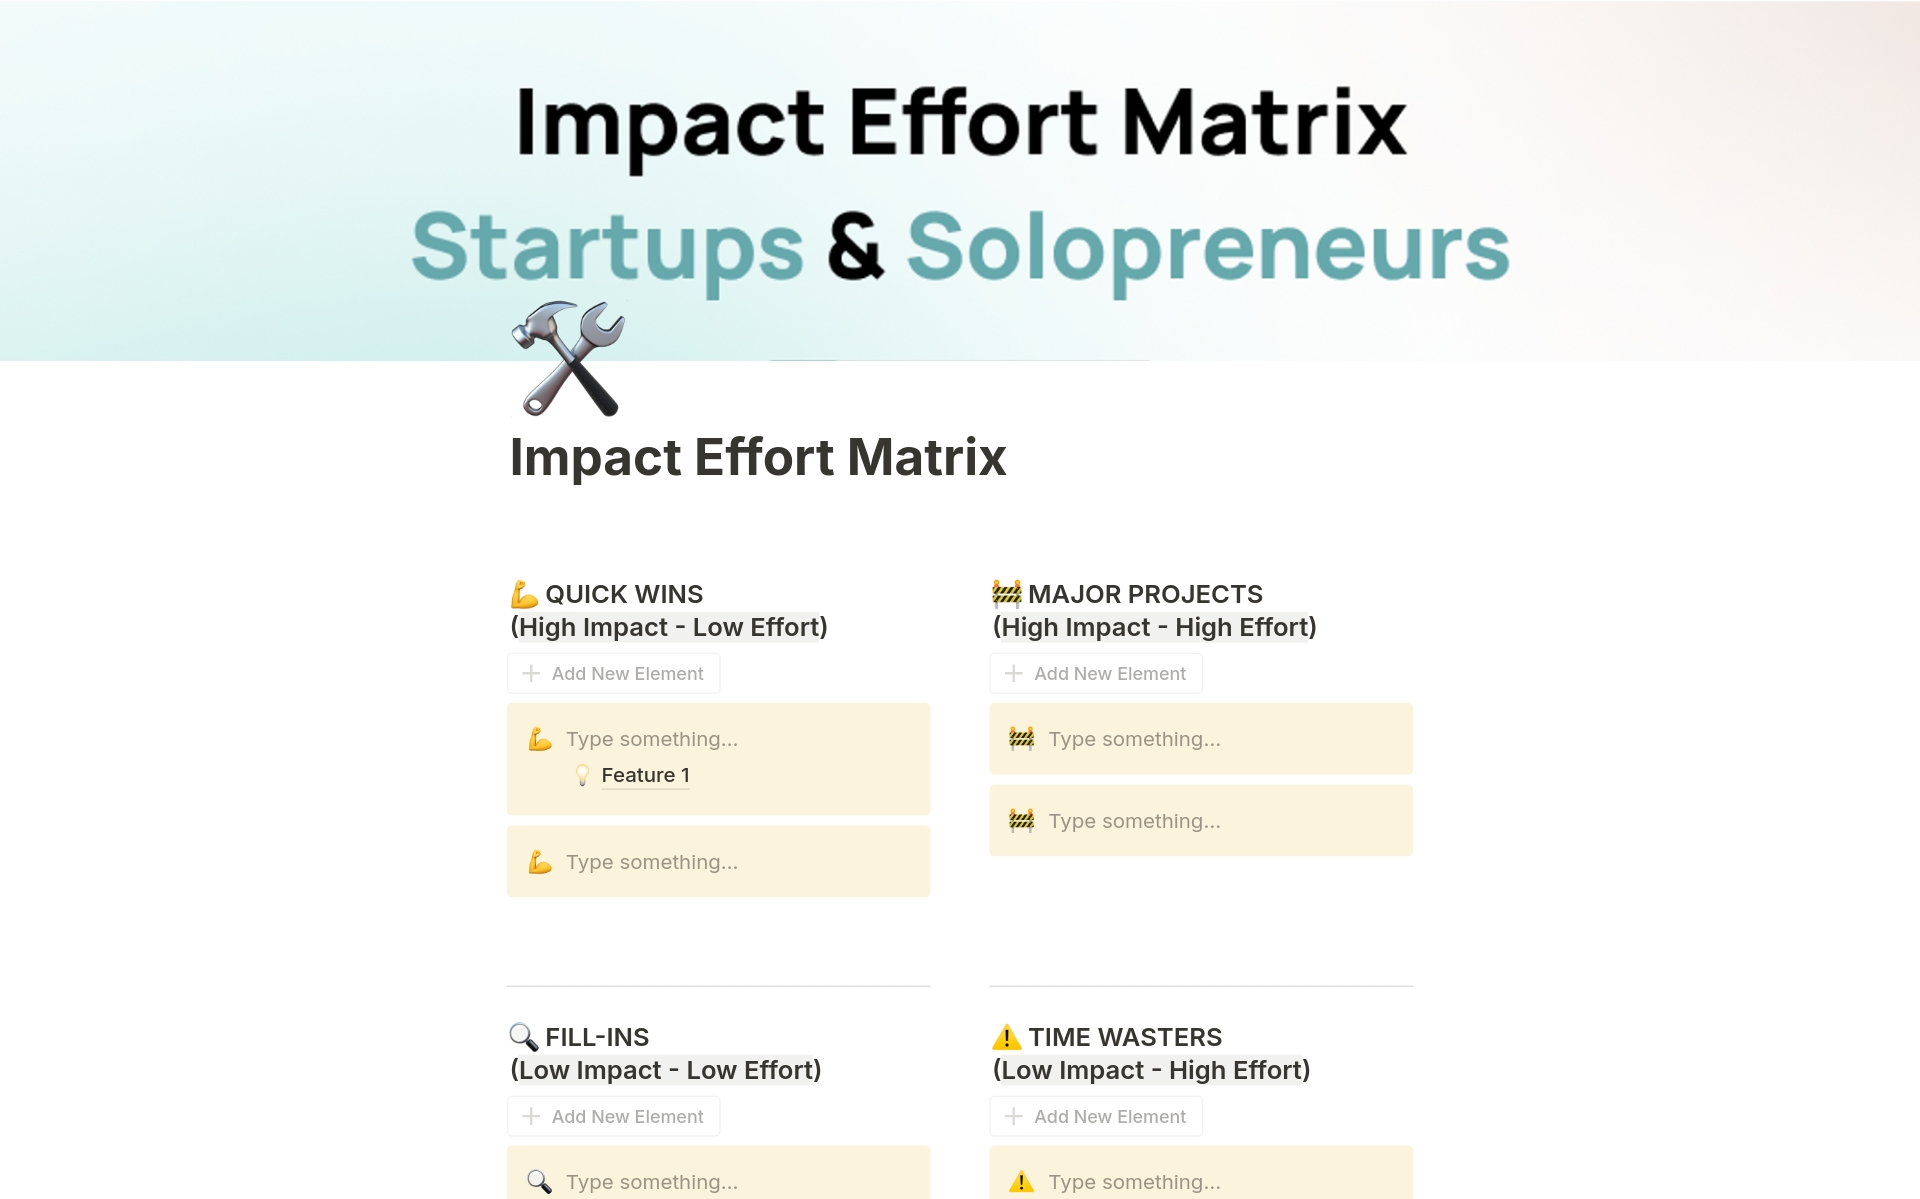 Uma prévia do modelo para Impact Effort Matrix for Startups & Solopreneurs